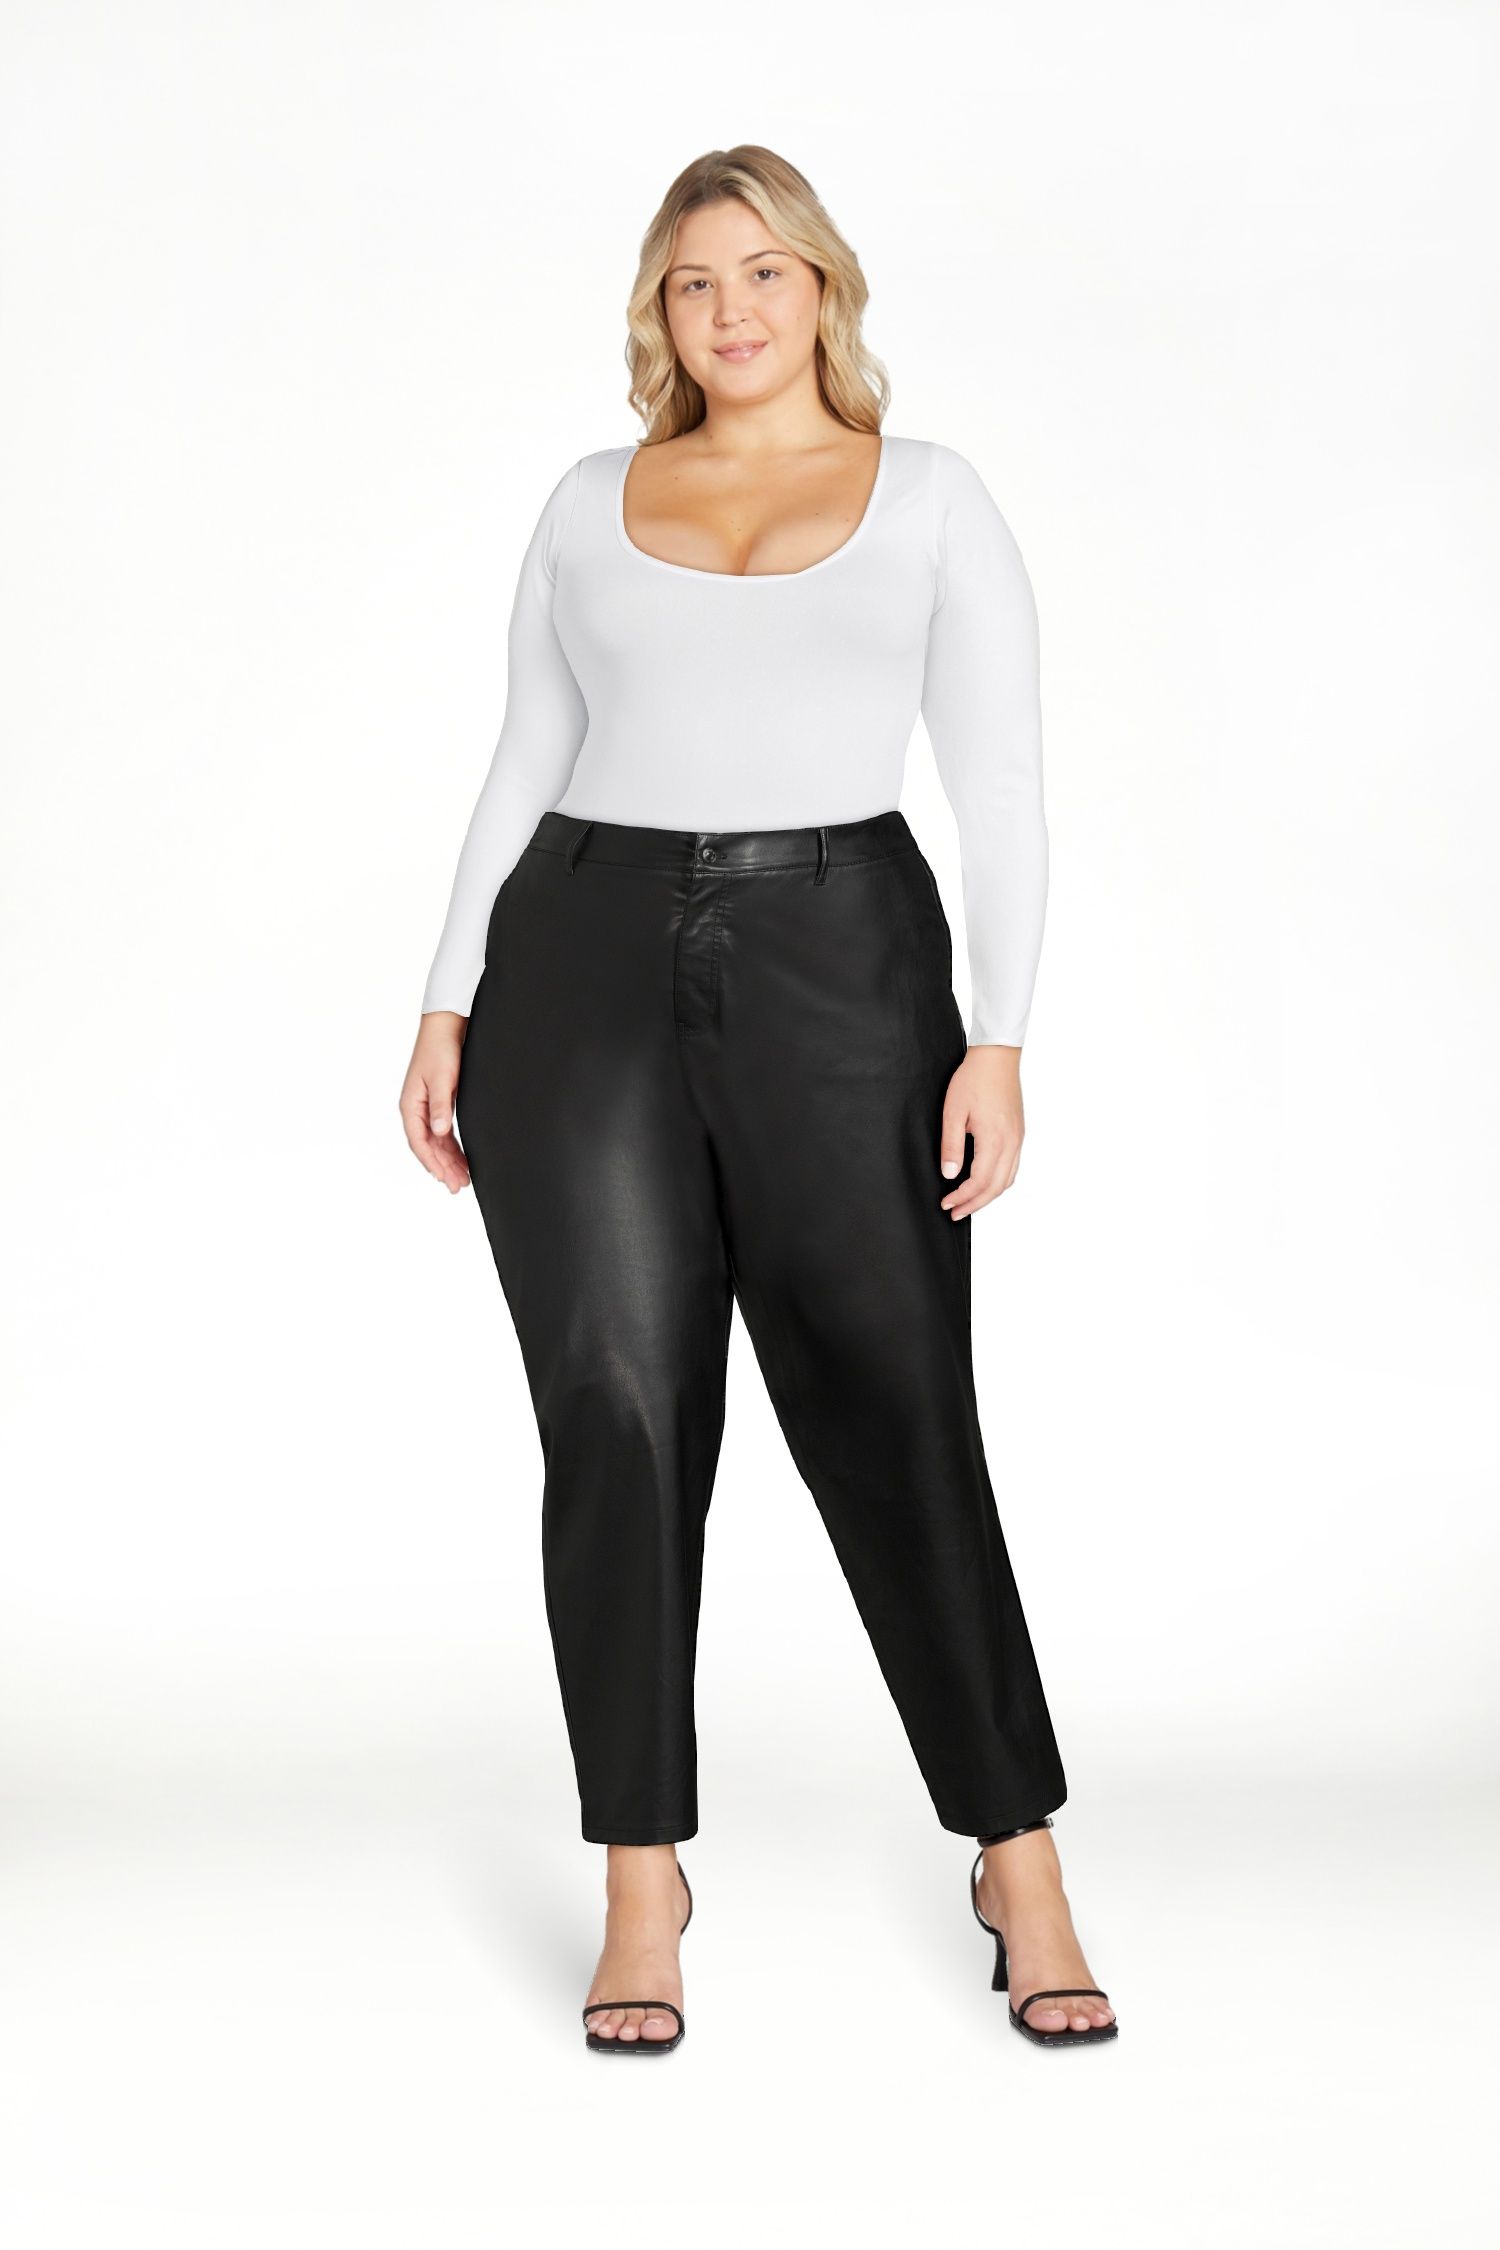 Sofia Jeans Women's Plus Size Eden Straight Super High Rise Faux Leather Pants, 29.5" Inseam, Siz... | Walmart (US)